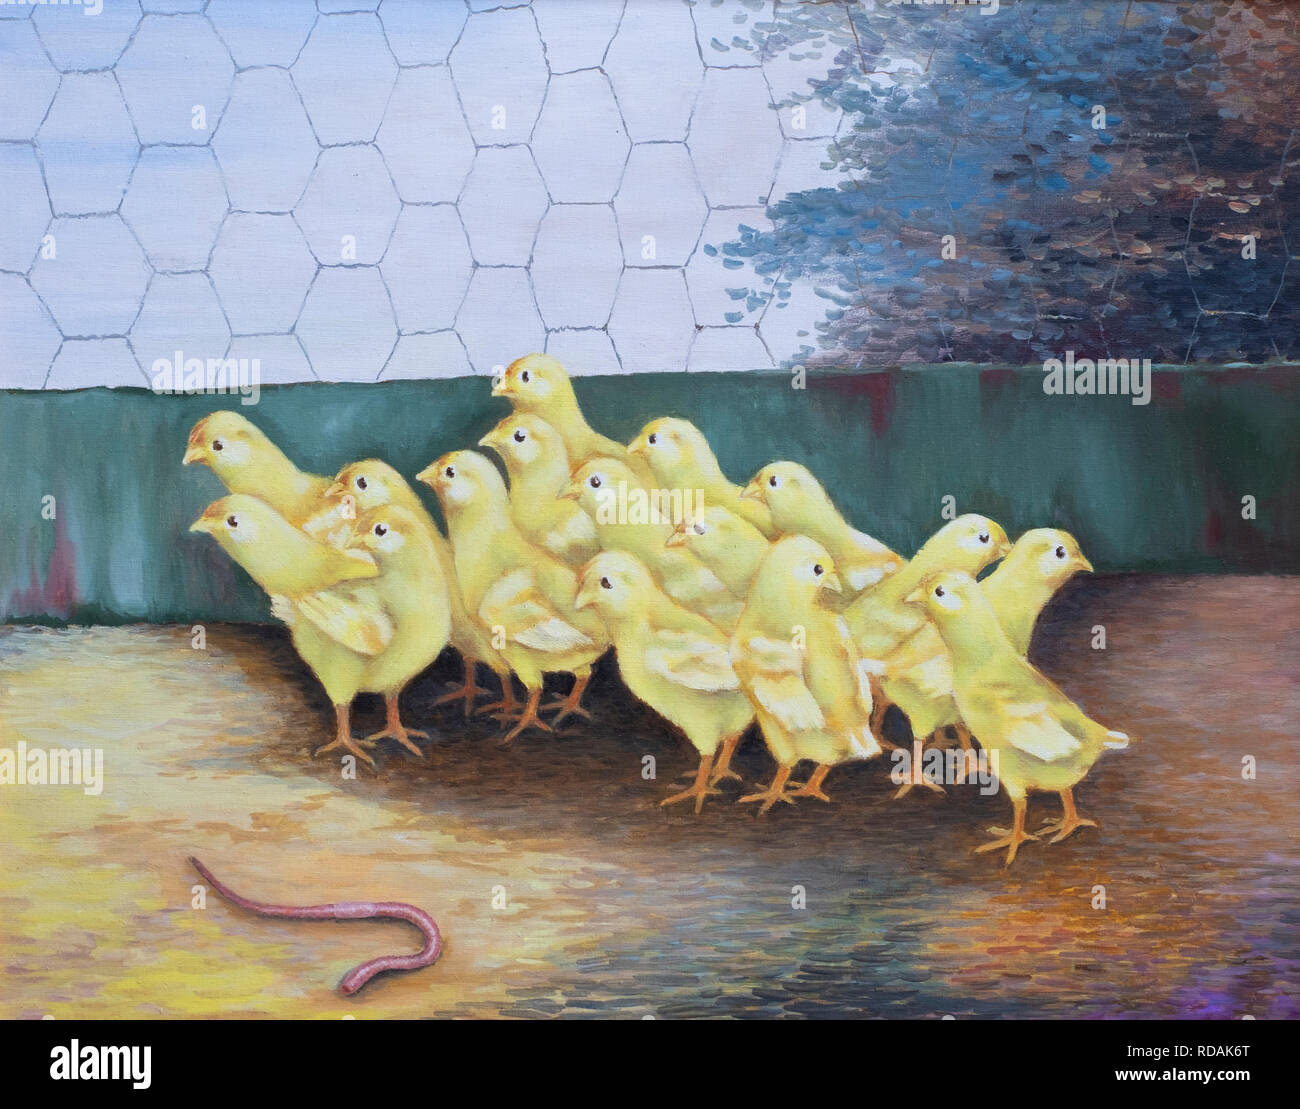 Handgemalte Ölgemälde von kleinen gelben Küken in einen Hühnerstall ein Regenwurm Angst haben. Stockfoto